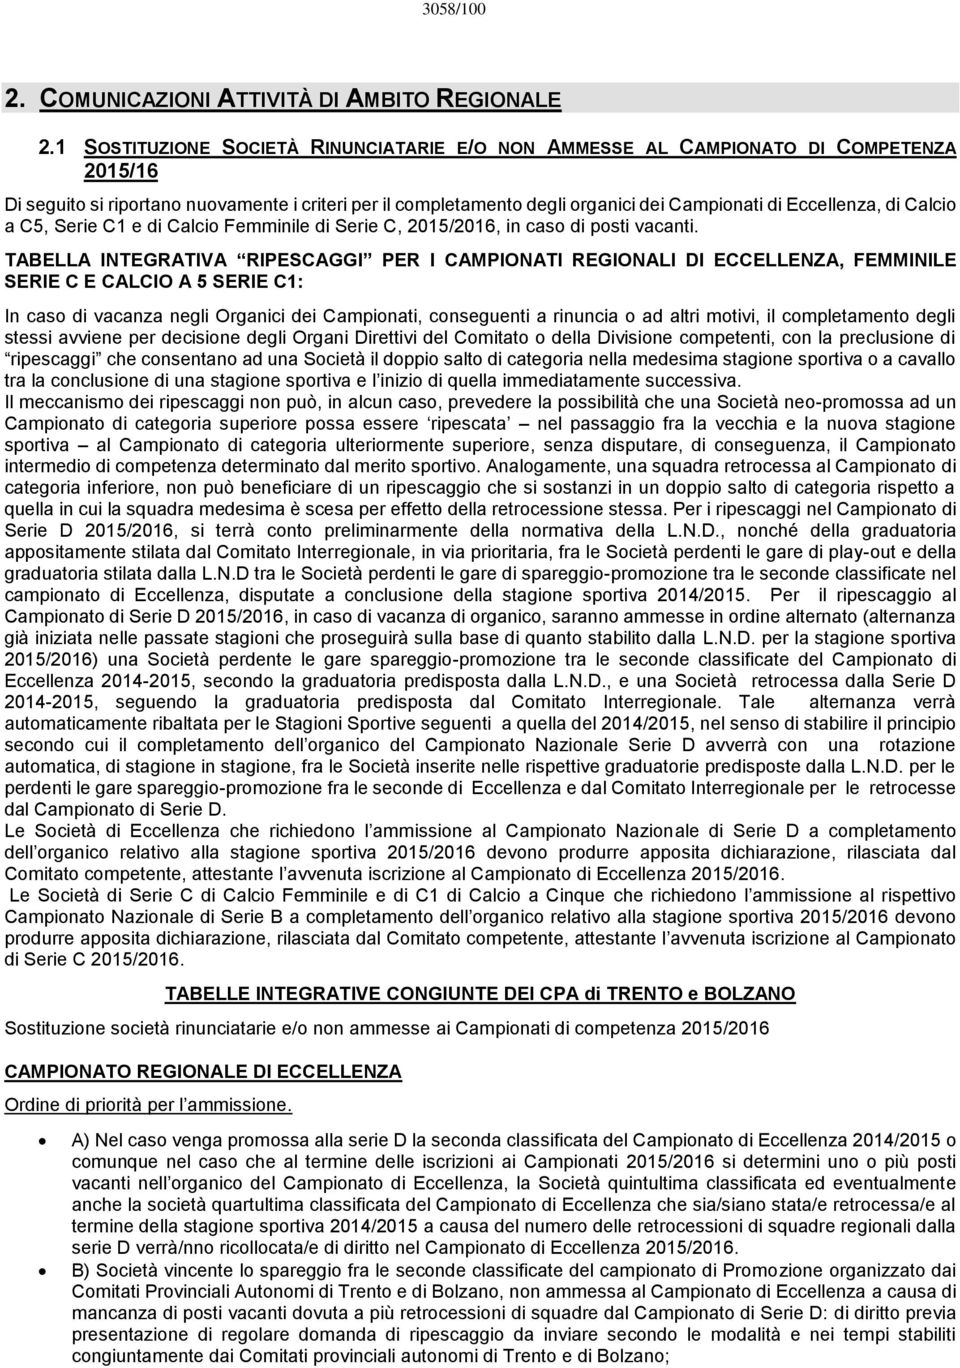 di Calcio a C5, Serie C1 e di Calcio Femminile di Serie C, 2015/2016, in caso di posti vacanti.